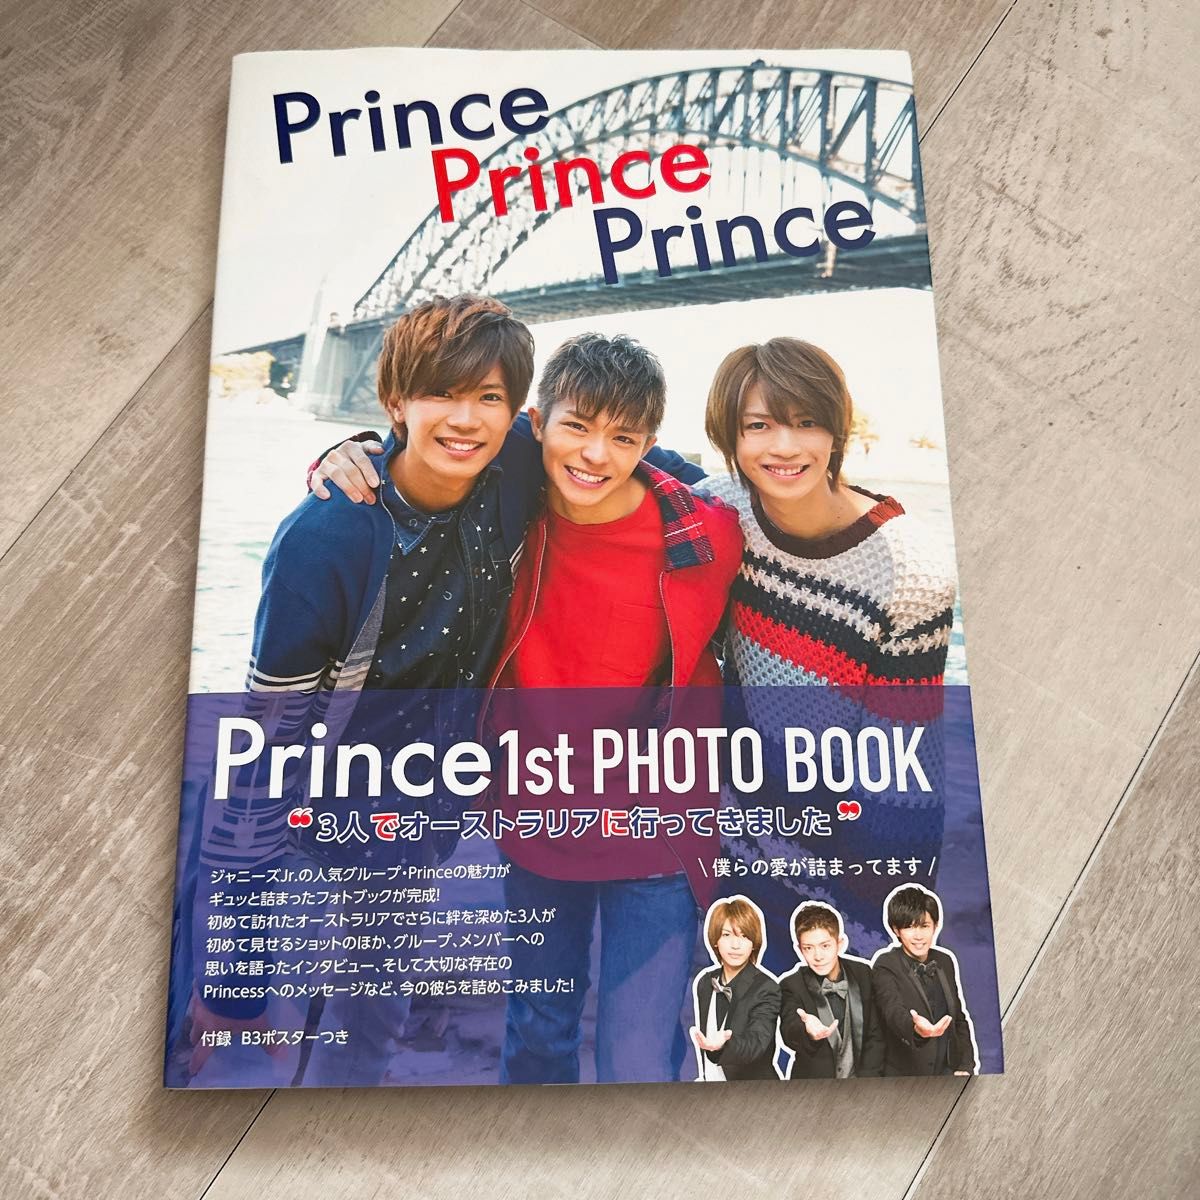 Prince 1st PHOTO BOOK 『Prince Prince Prince』